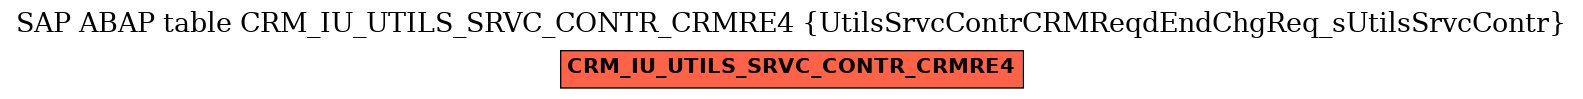 E-R Diagram for table CRM_IU_UTILS_SRVC_CONTR_CRMRE4 (UtilsSrvcContrCRMReqdEndChgReq_sUtilsSrvcContr)